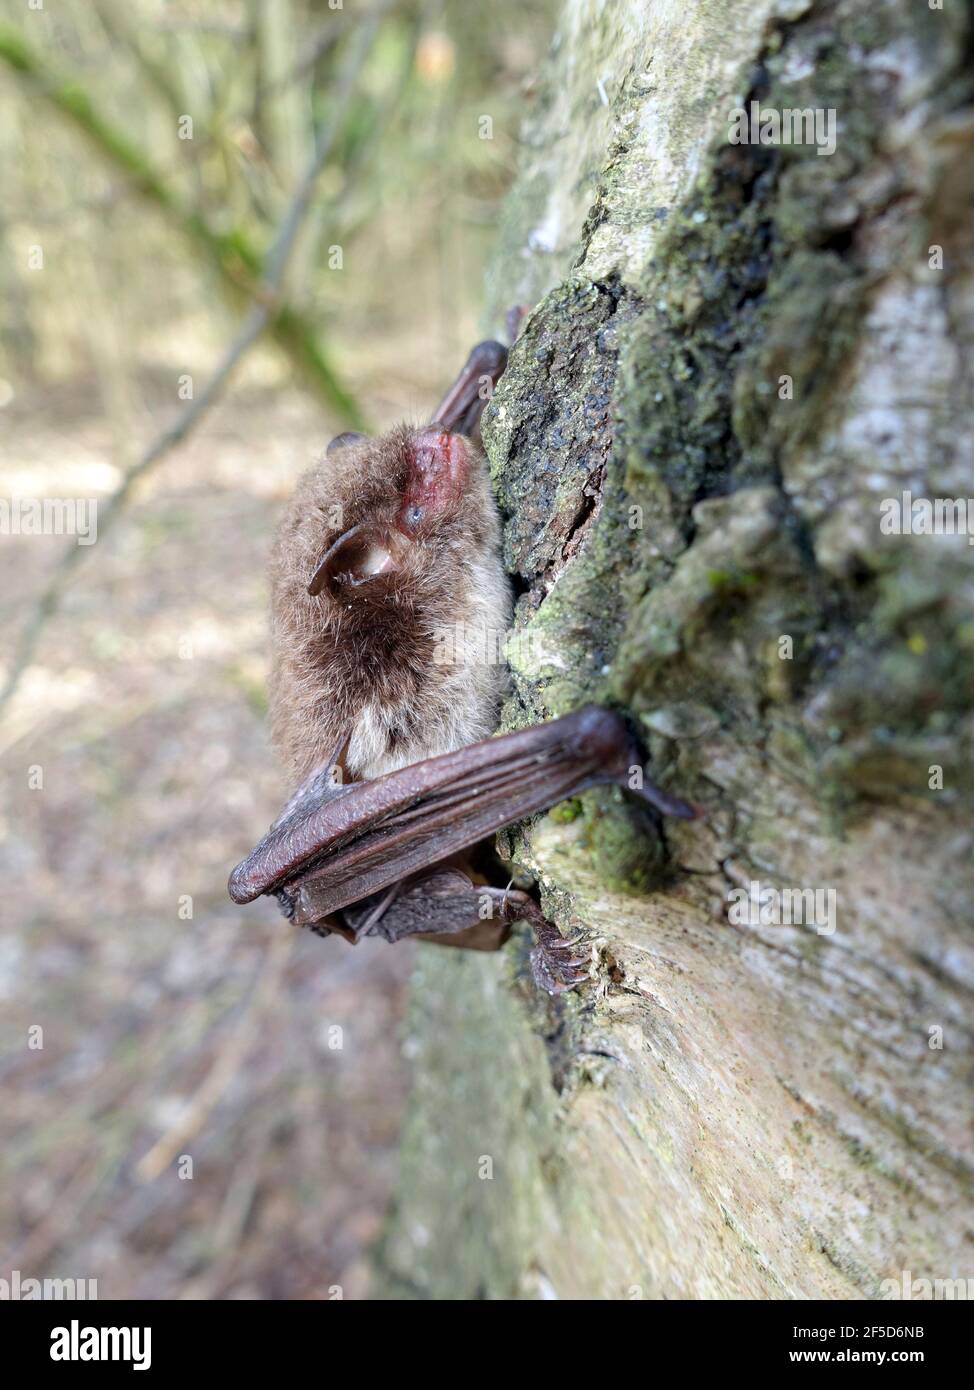 El murciélago de Daubenton (Myotis daubentoni, Myotis daubentonii), está sentado en un tronco de abedul, Alemania Foto de stock